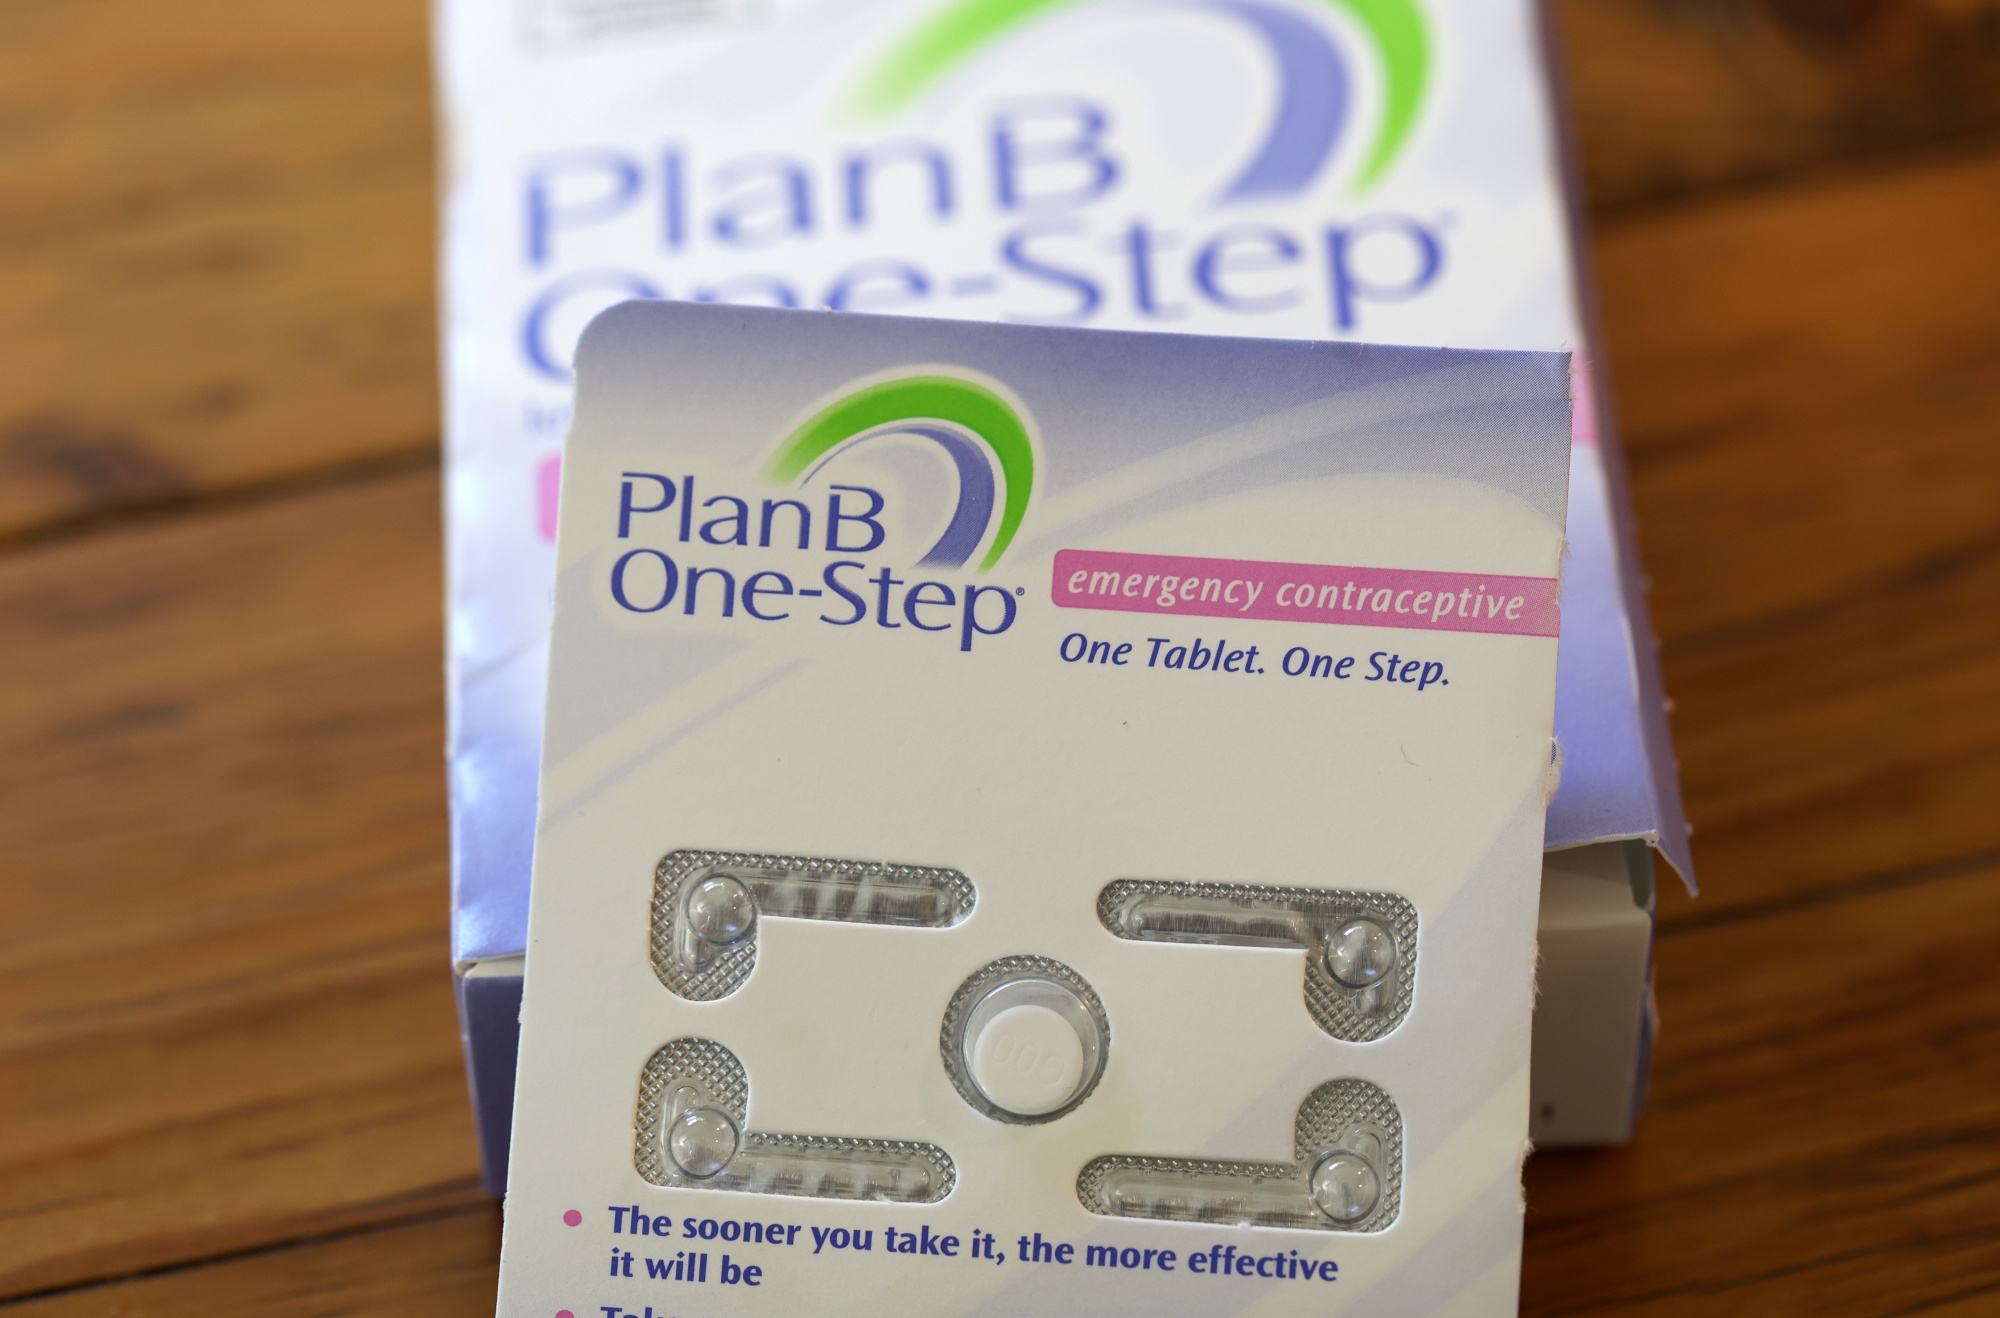 plan b pill size